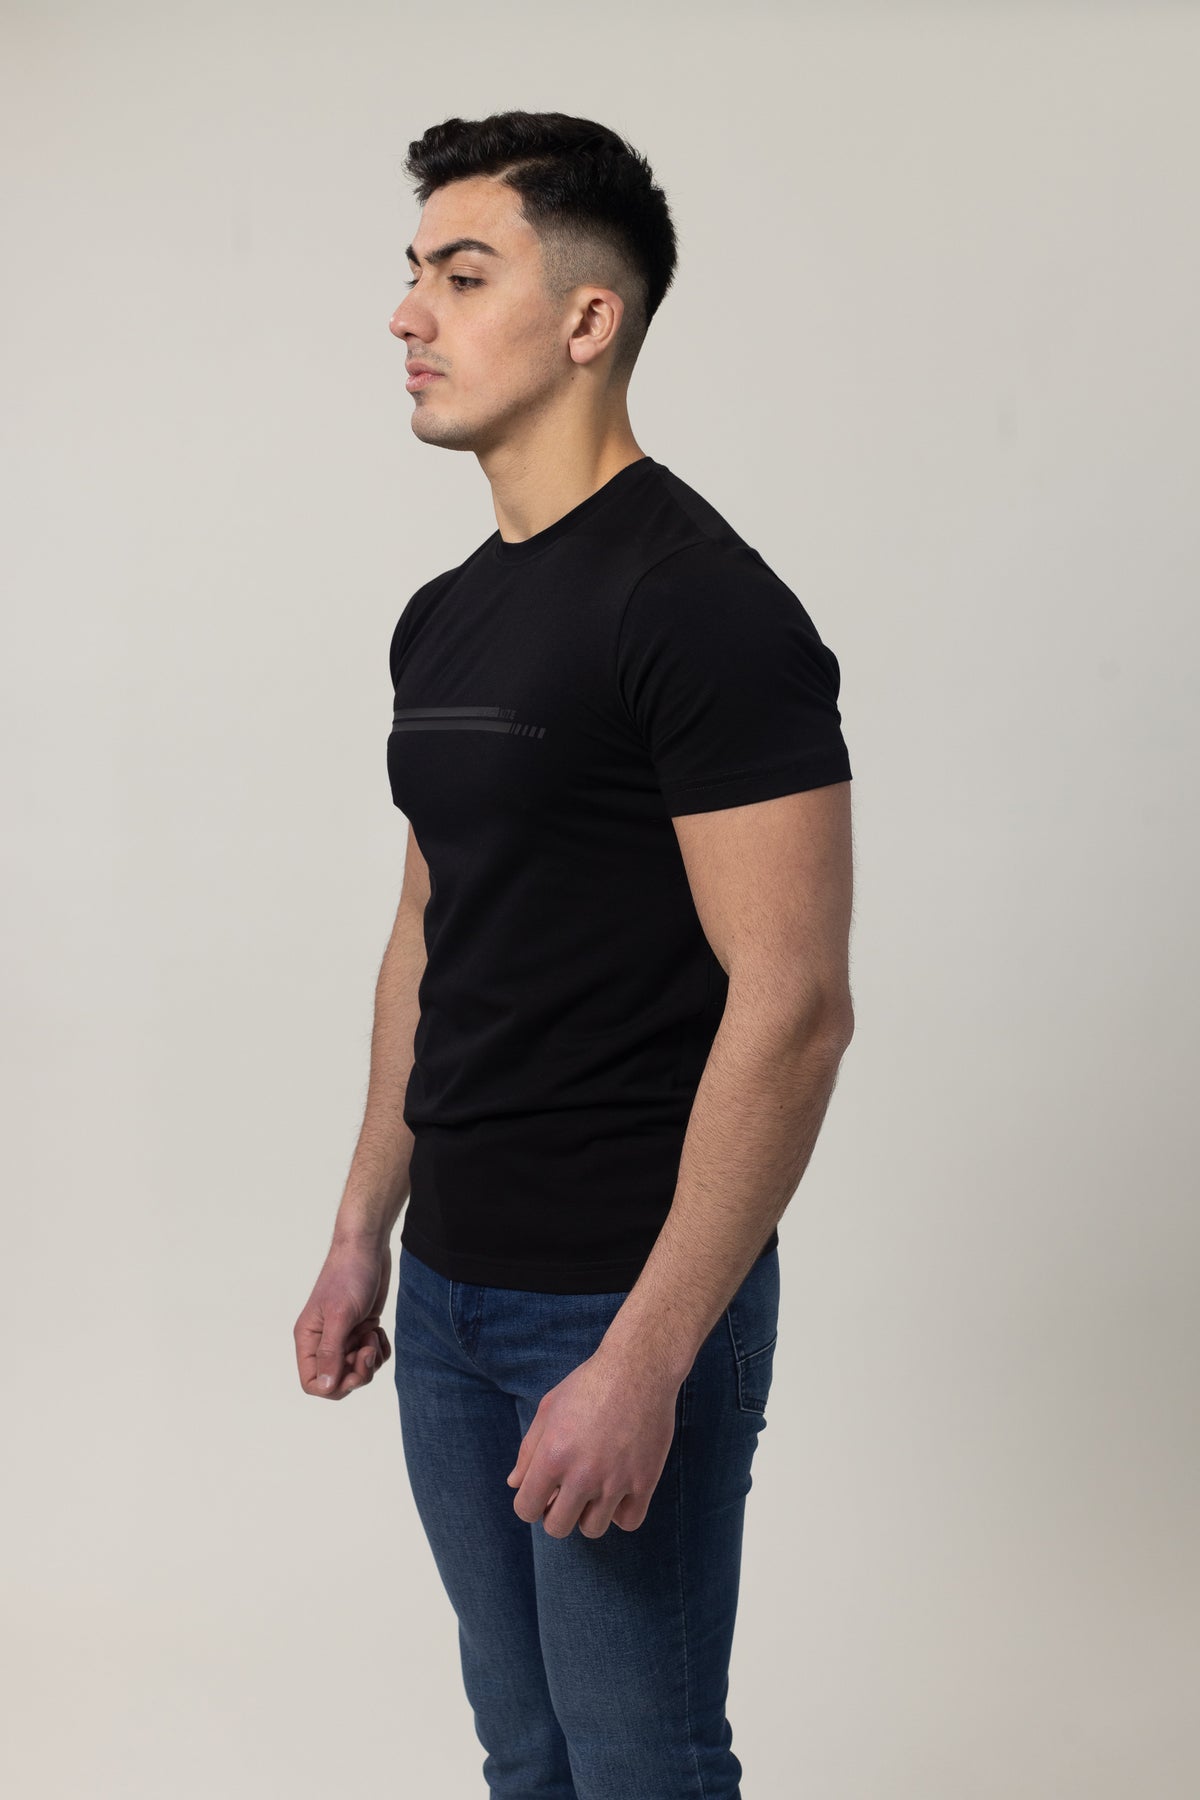 T-Shirt Cotton Lycra Round Neck  - Black